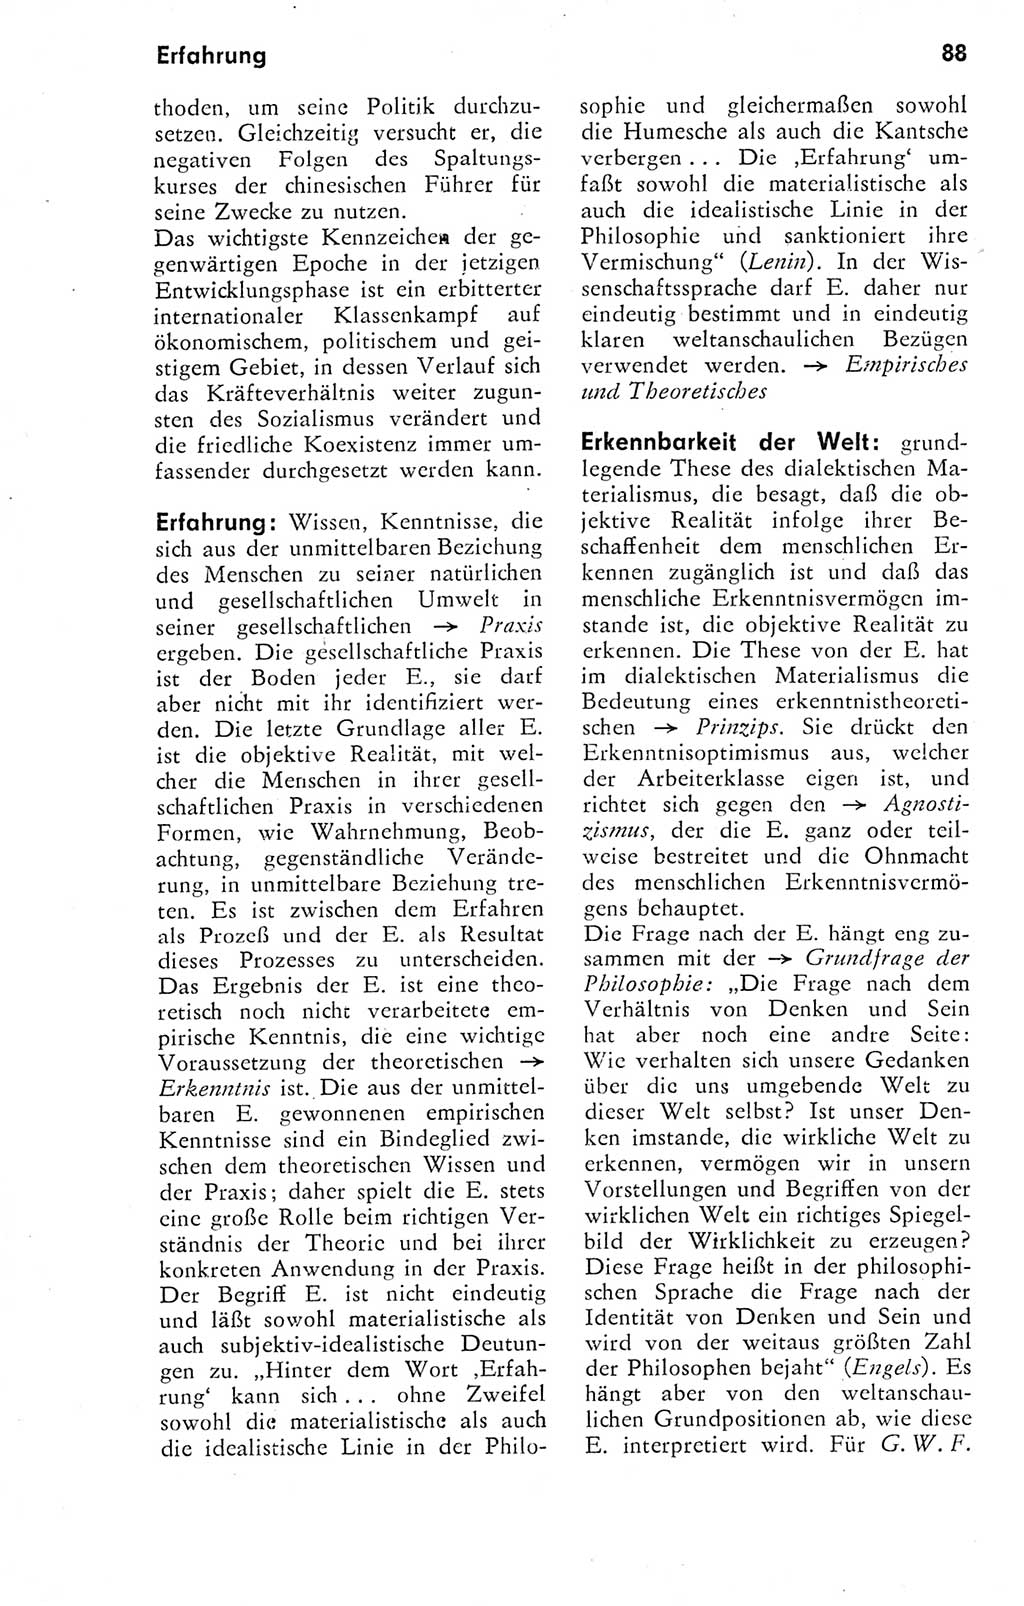 Kleines Wörterbuch der marxistisch-leninistischen Philosophie [Deutsche Demokratische Republik (DDR)] 1974, Seite 88 (Kl. Wb. ML Phil. DDR 1974, S. 88)